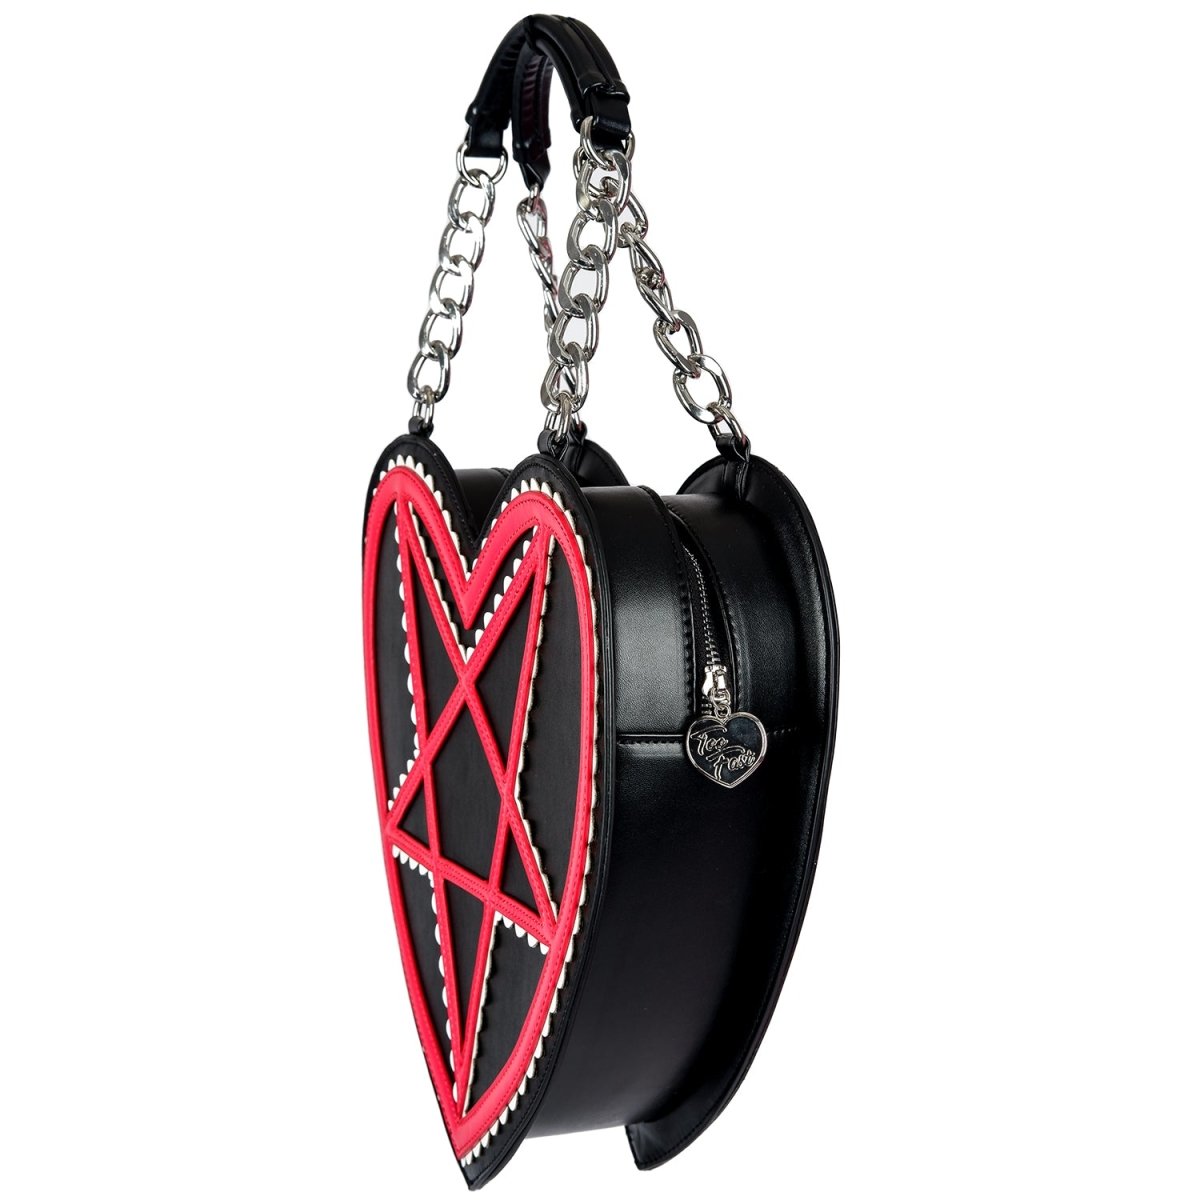 Pentagram Heart Handbag